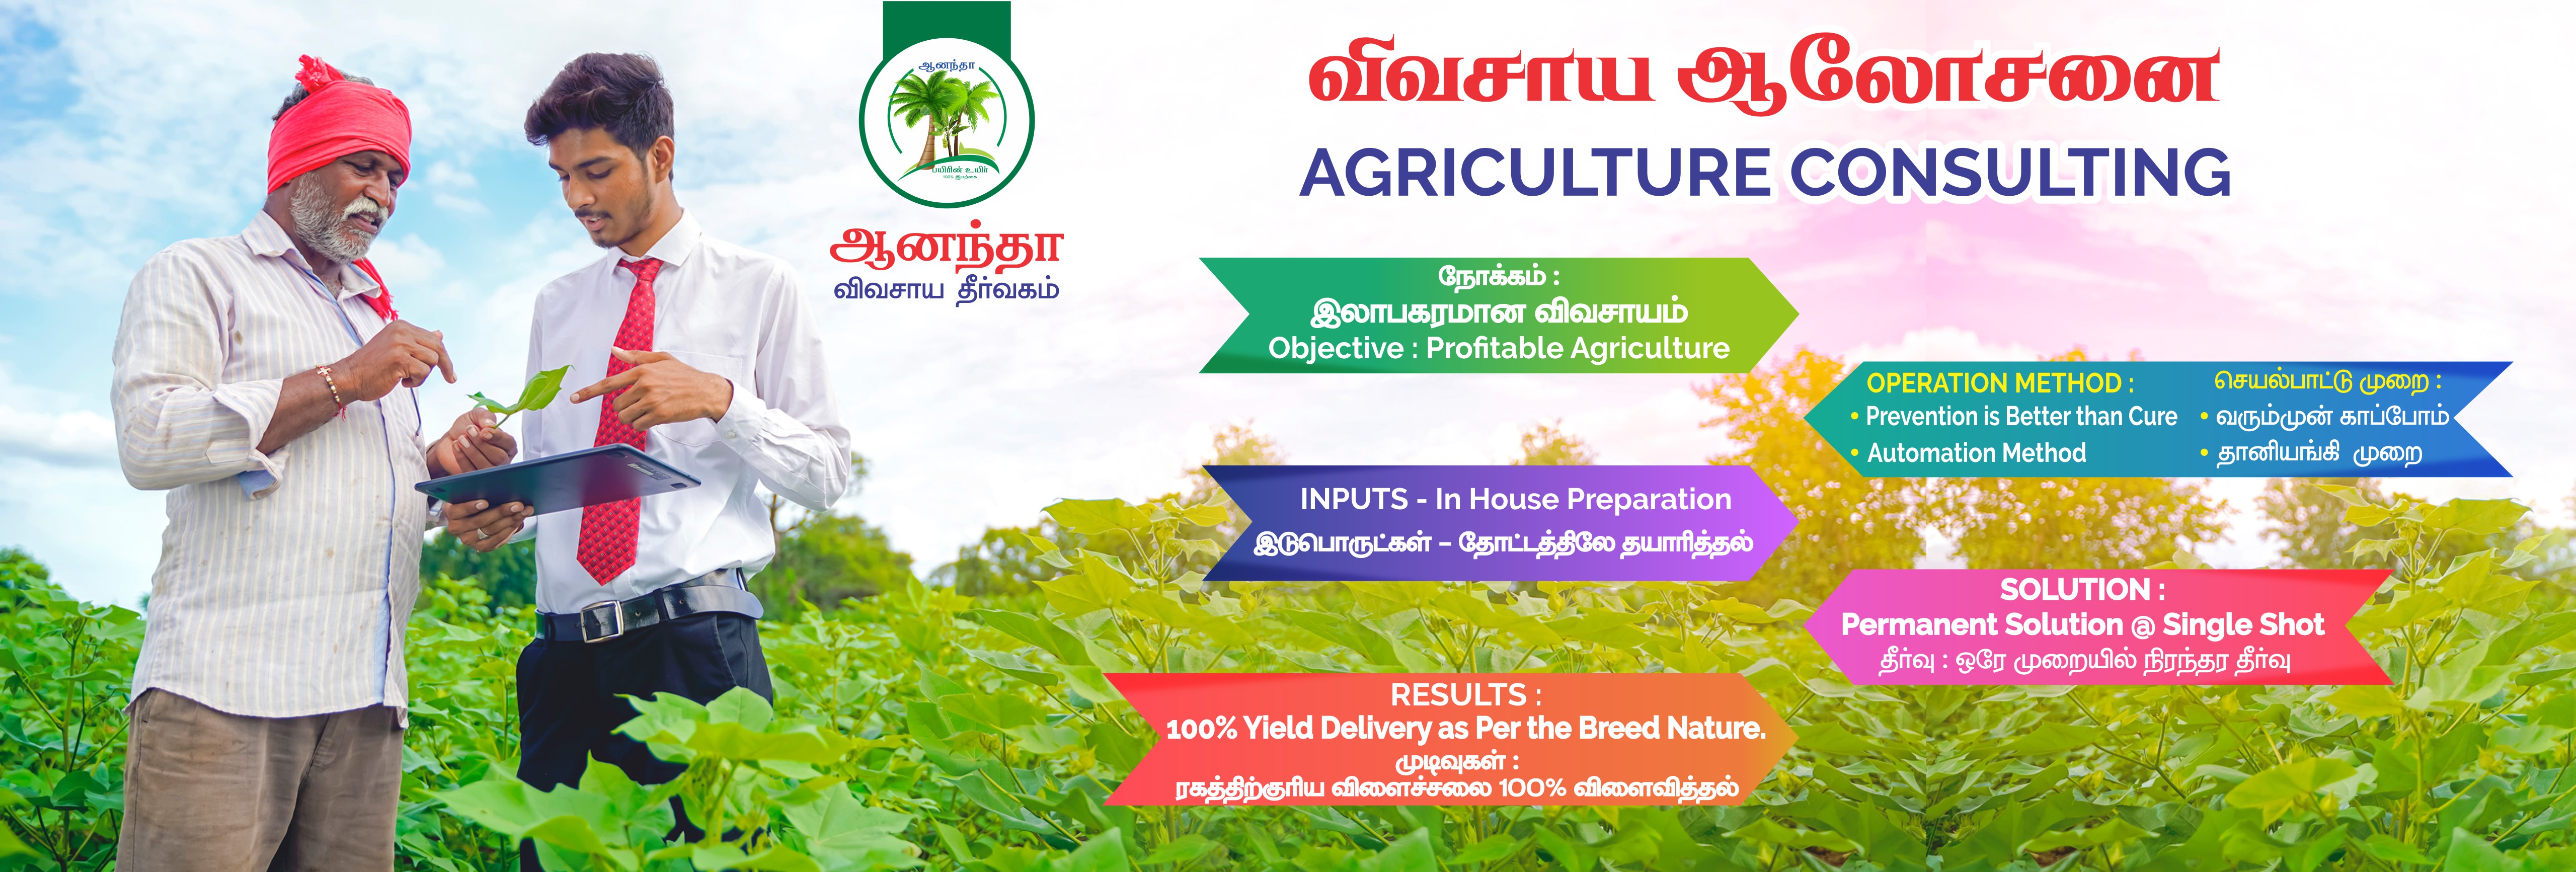 Farm Management Services in Tamilnadu